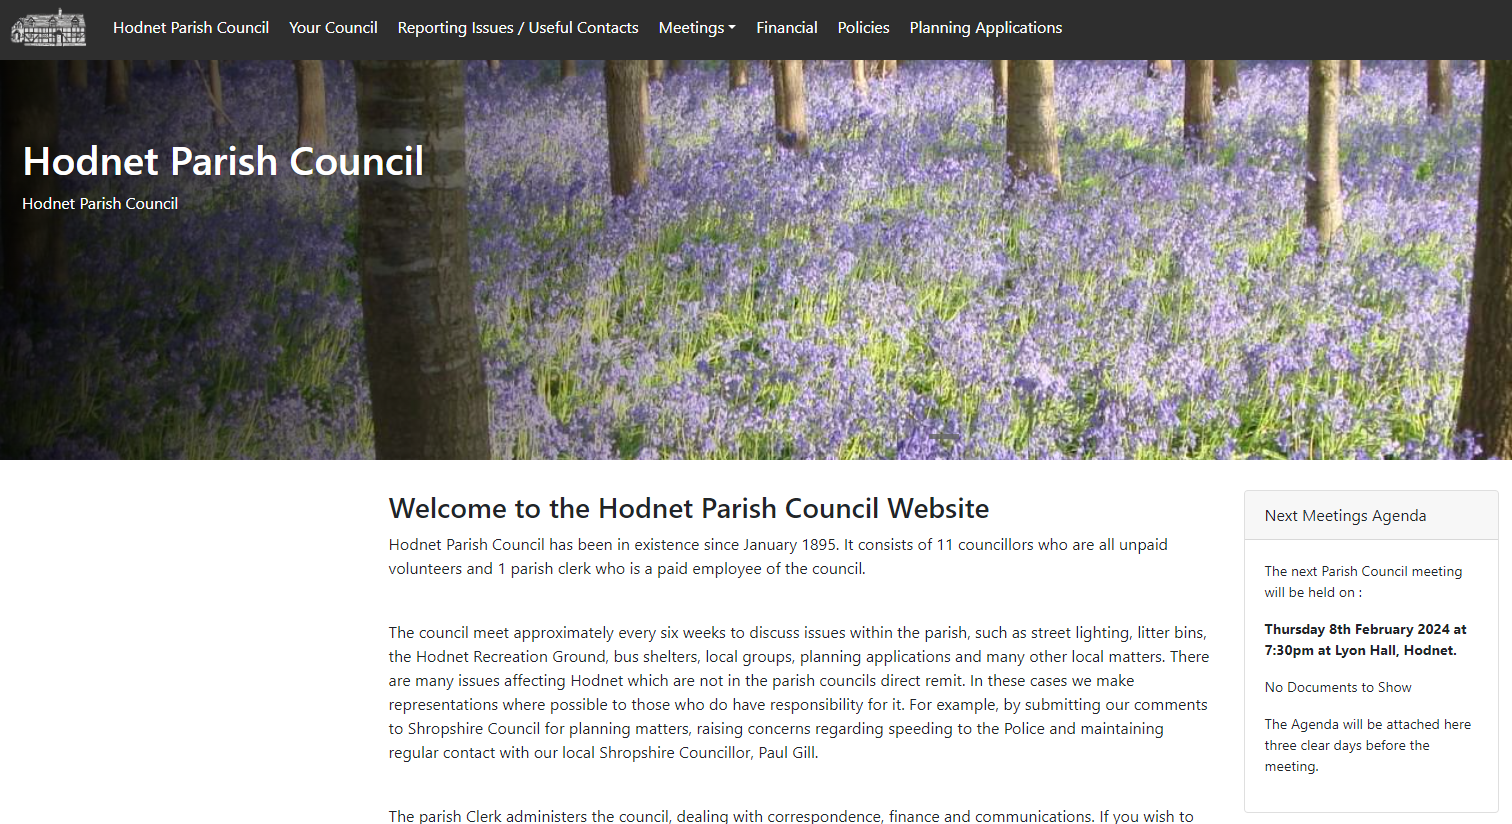 Hodnet Parish Council Website